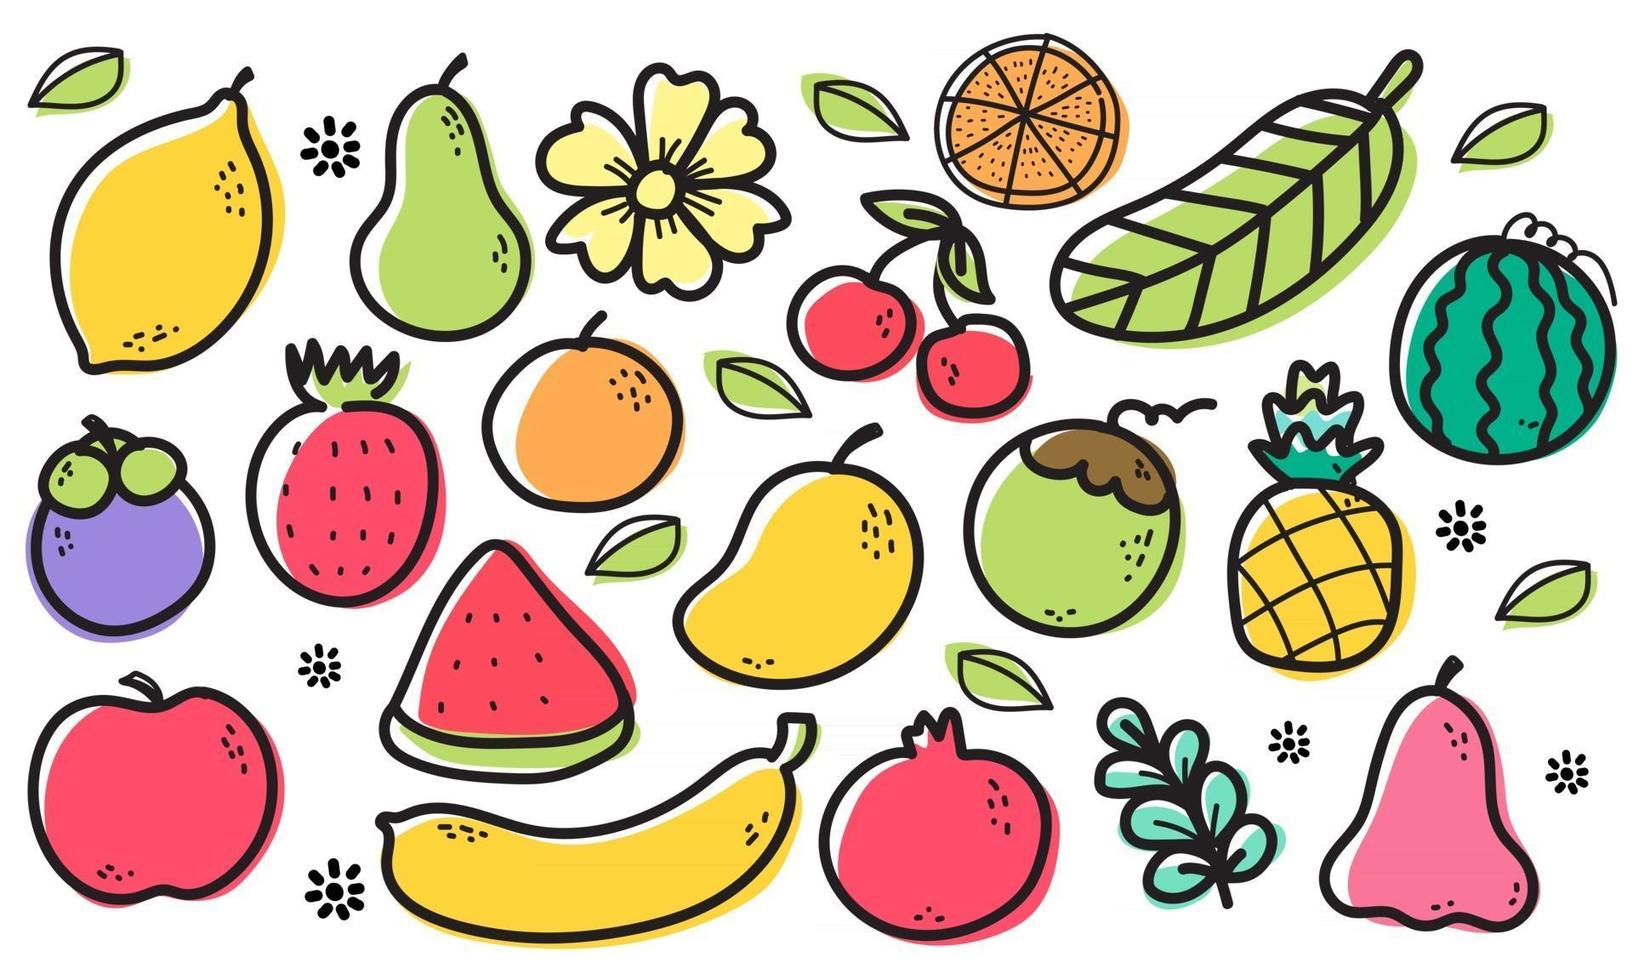 nahtlose Musterfrüchte, Orange, Banane, Granatapfel, Mangostan, Erdbeere, Ananas, Wassermelone, Zitrone, Avocado, Kokosnuss, Rosenapfel, Kirsche, Apfel, Blume und Blatt auf weißem Hintergrund. vektor